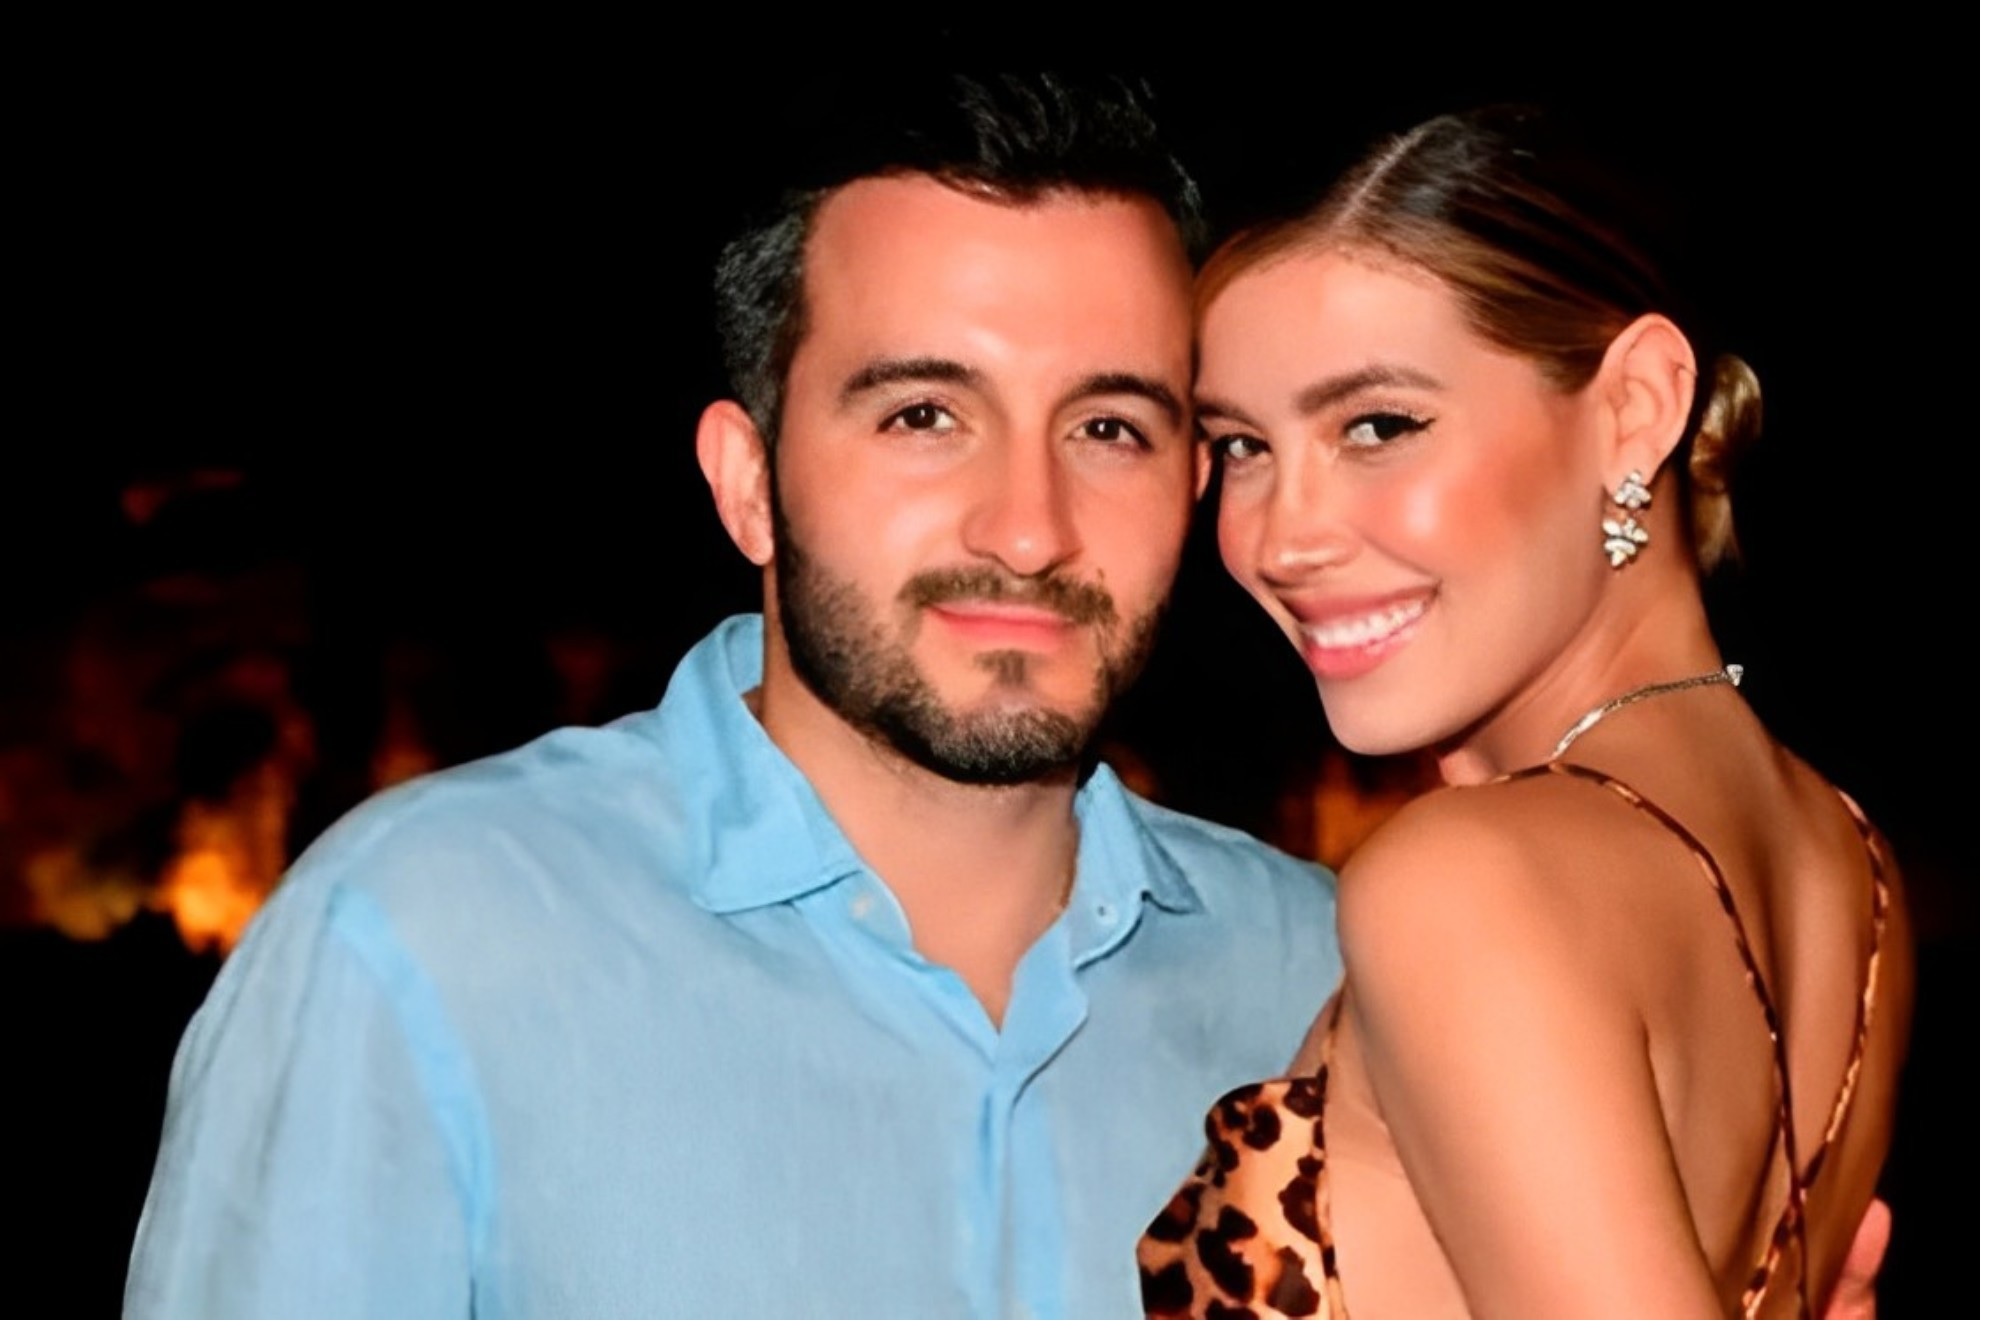 Danilo Díaz y Michelle Salas están comprometidos y se casarán este fin de semana en Italia.